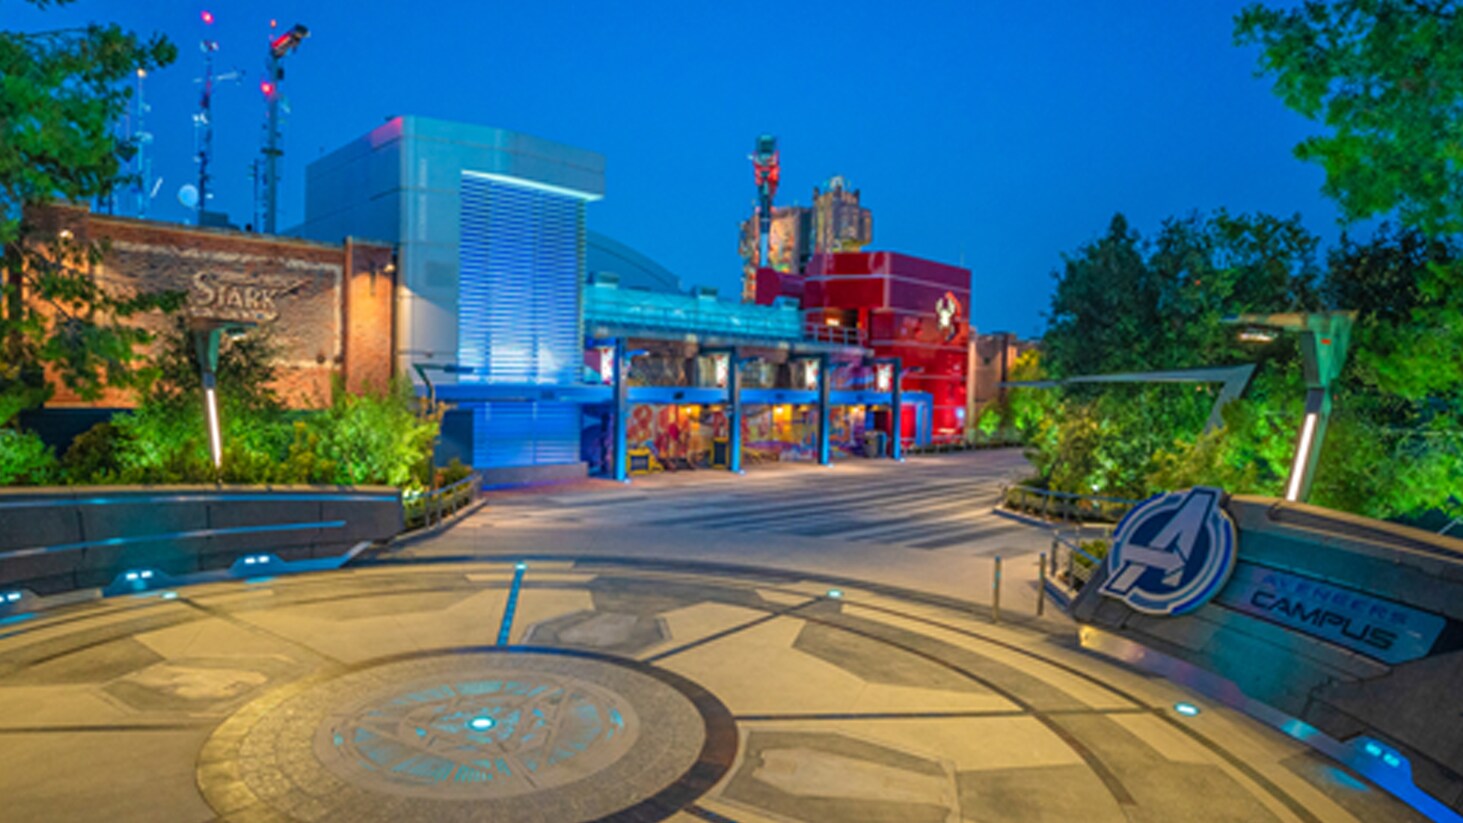 Disneyland Resort abrirá un territorio completamente nuevo, Avengers Campus da la bienvenida a los reclutas de superhéroes a partir del 4 de junio del 2021